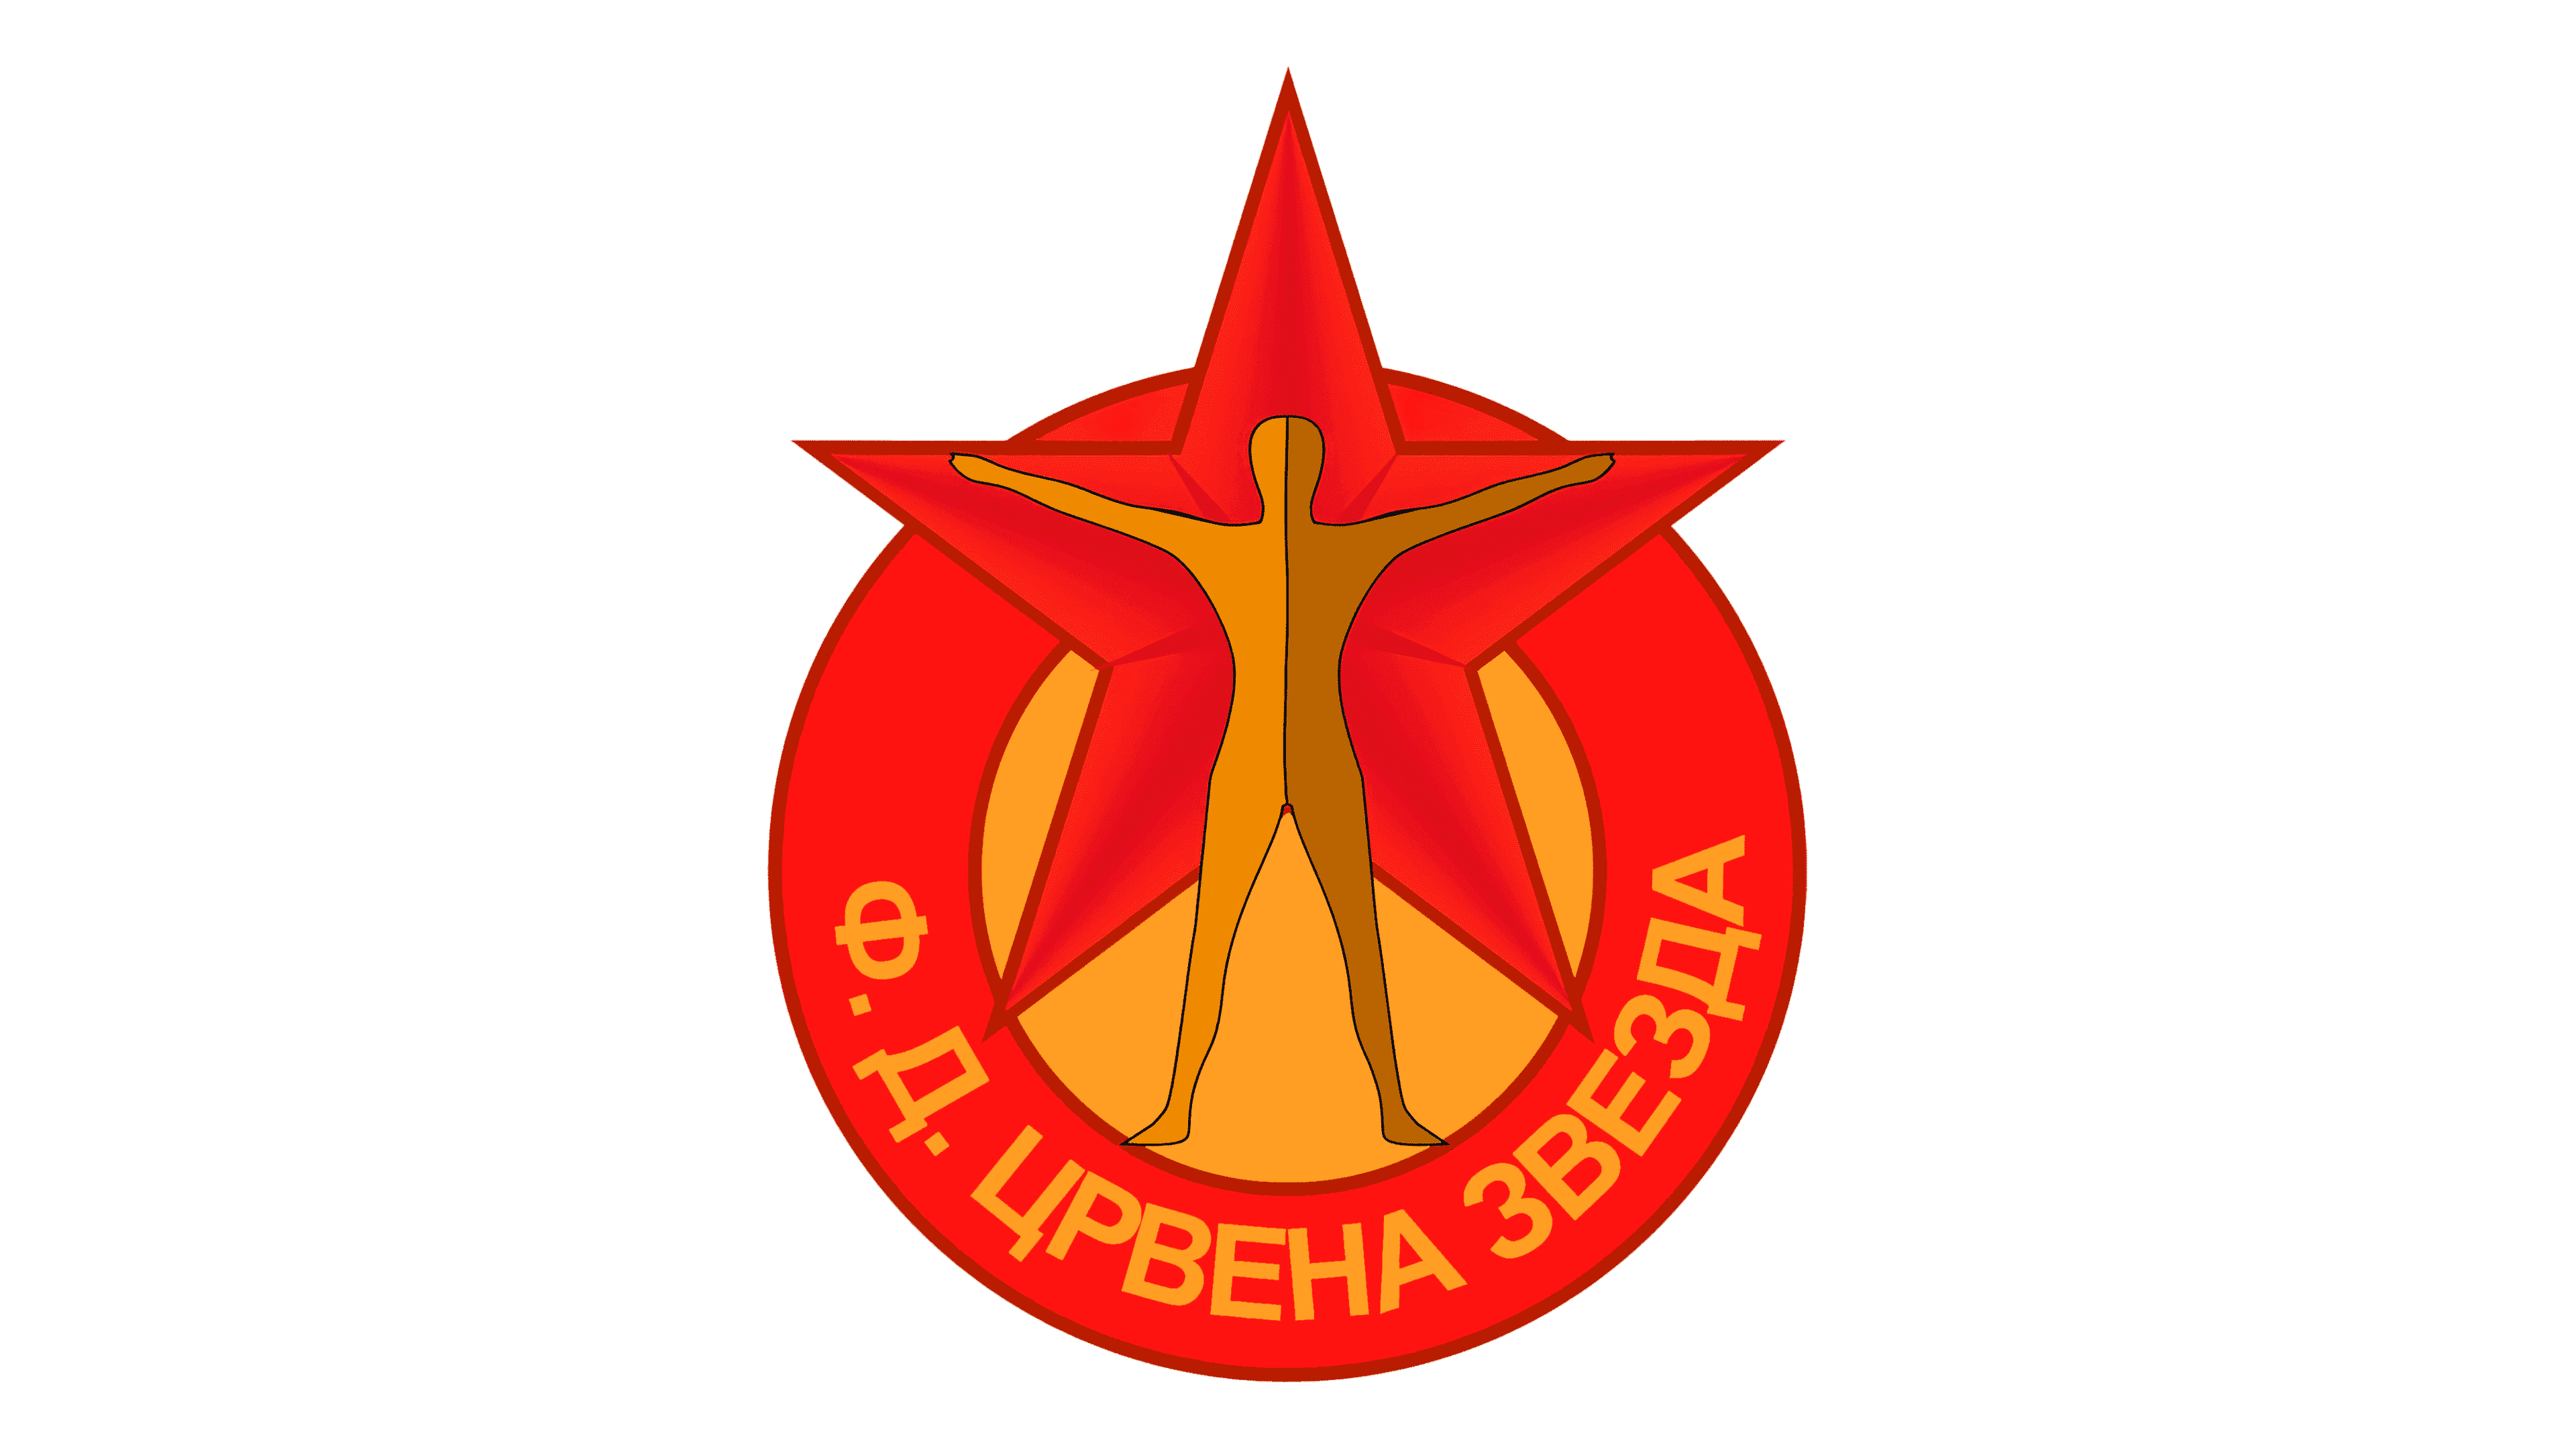 File:FK Crvena zvezda - 30.titula.jpg - Wikimedia Commons